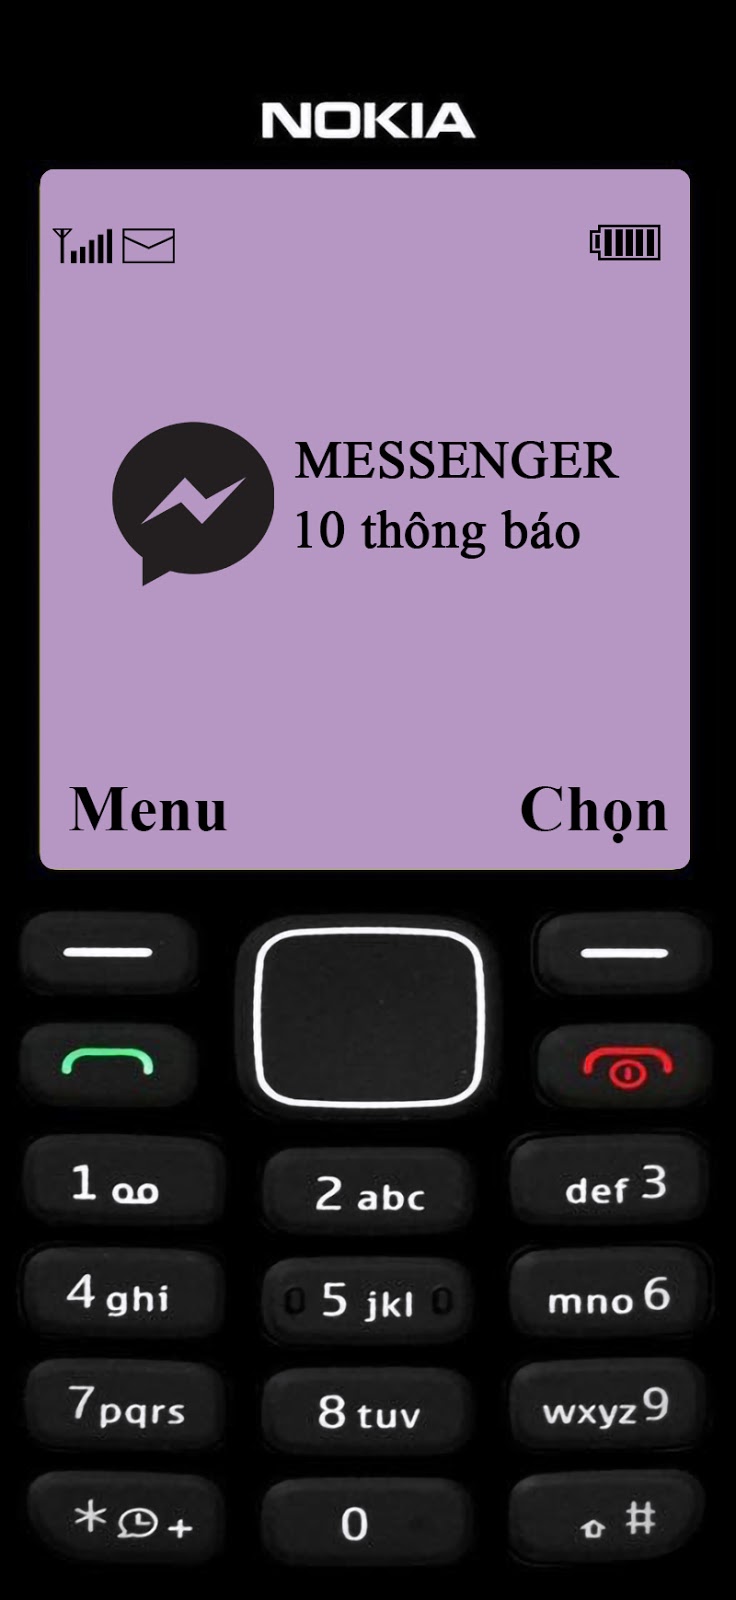 Lang Thang Hà Nội - HOT ‼️ MESSENGER VỪA CẬP NHẬT TUỲ CHỈNH HÌNH NỀN CỰC  XINH XẺO ❤️ BẠN ĐÃ CÓ CÔNG CHÚA ĐỂ ĐỔI CHƯA ??? Messenger vừa cho phép